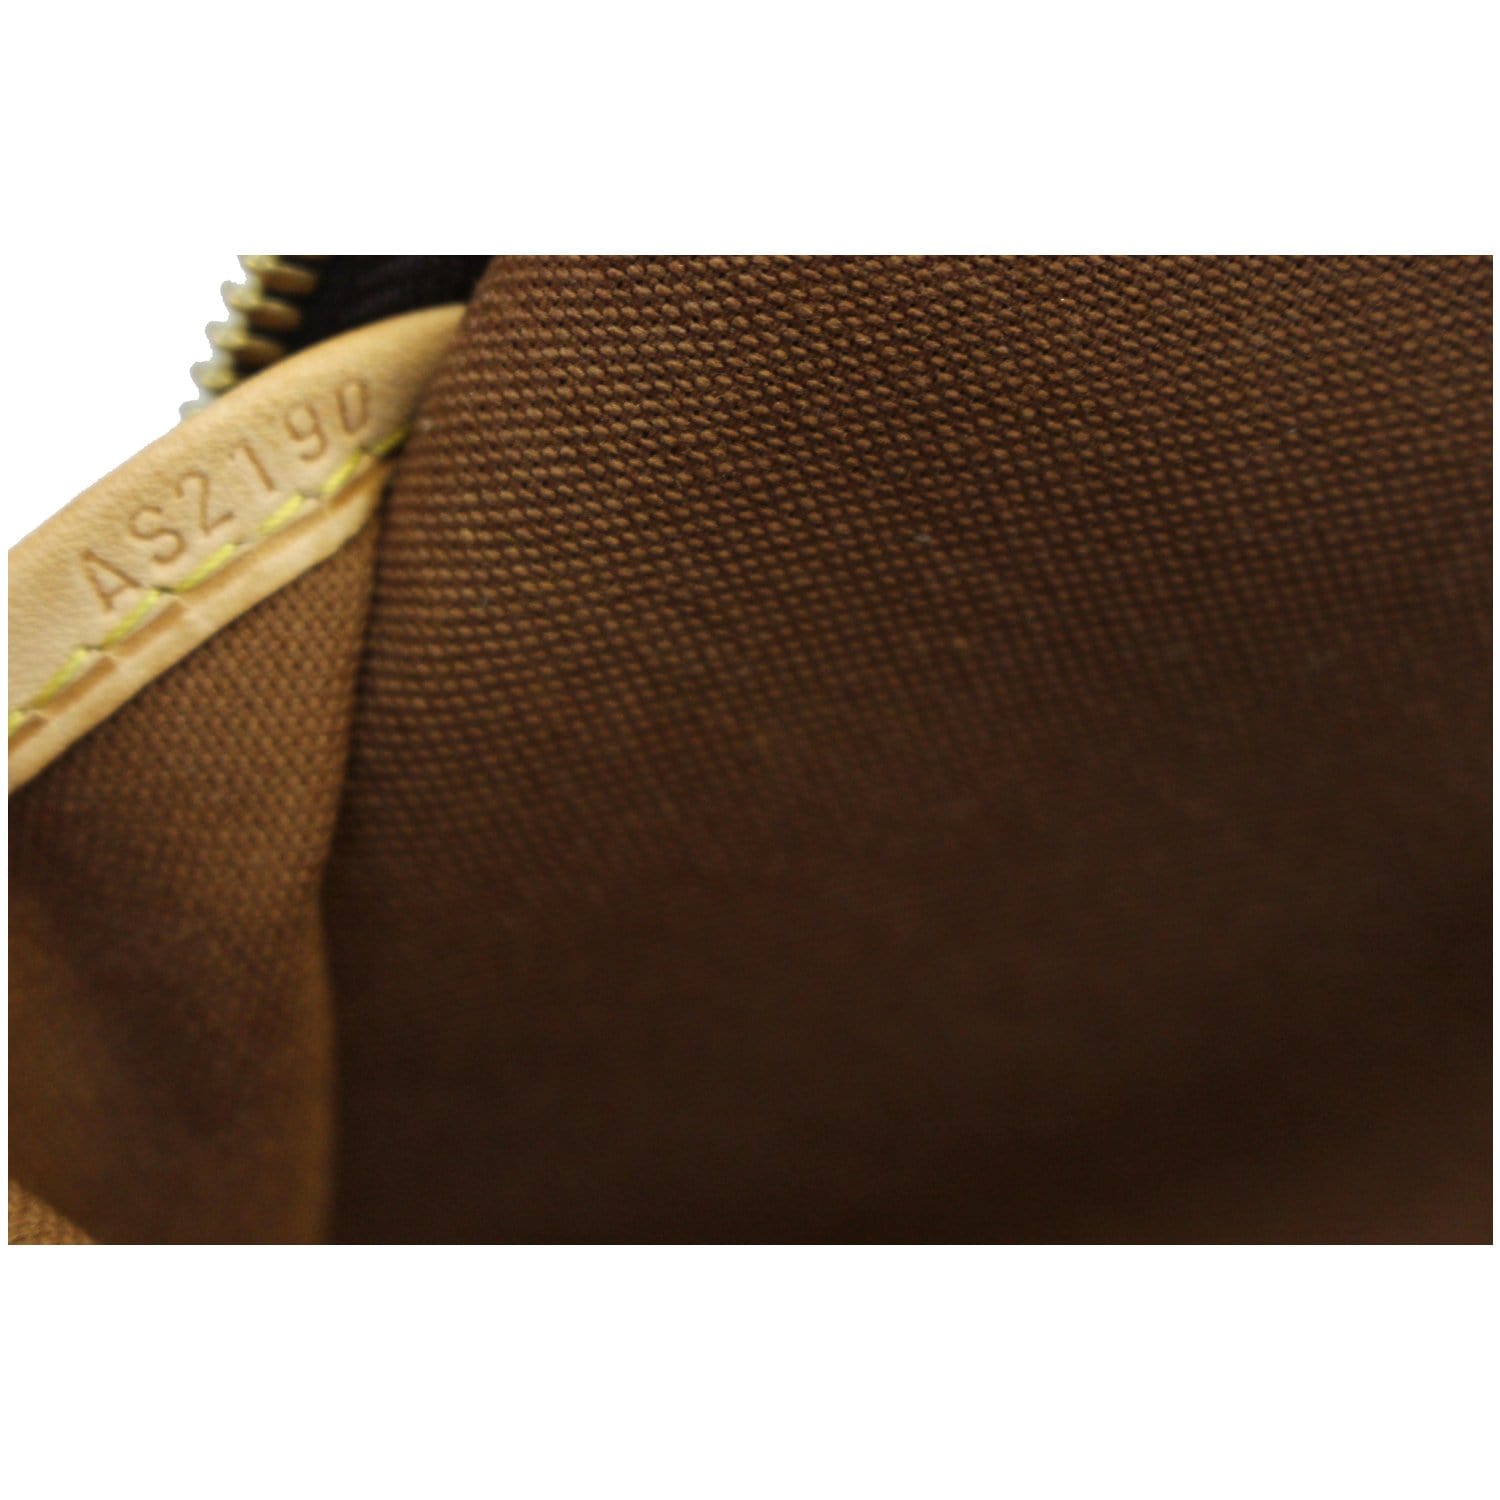 Louis Vuitton Canvas Monogram Icare Shoulder / Business Bag.